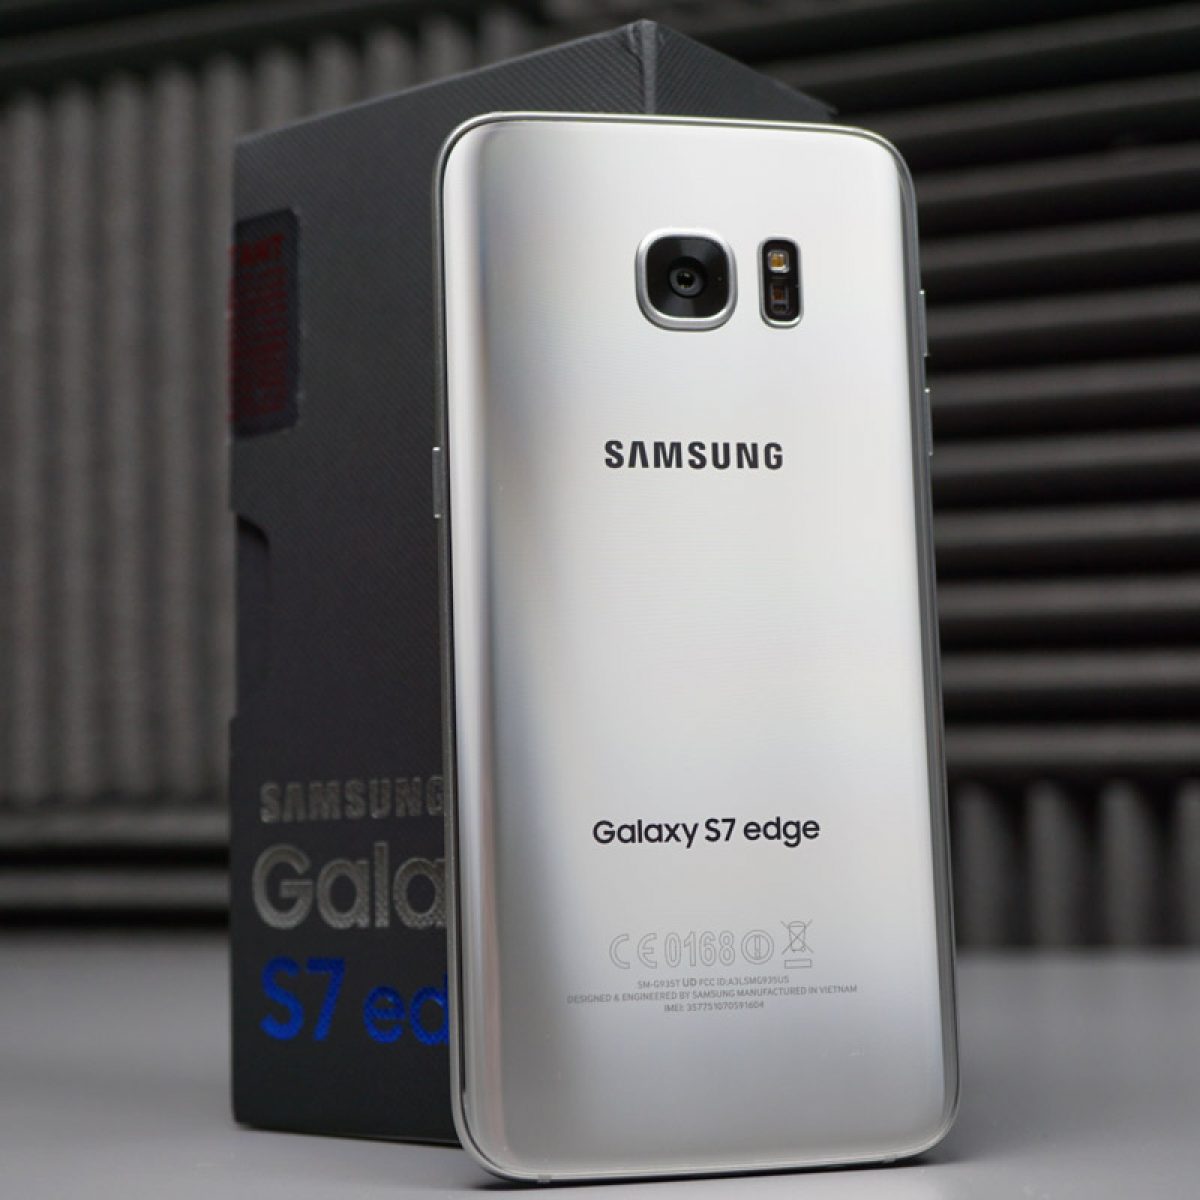 vacuüm Prematuur Relatie Galaxy S7 Edge Unboxing!